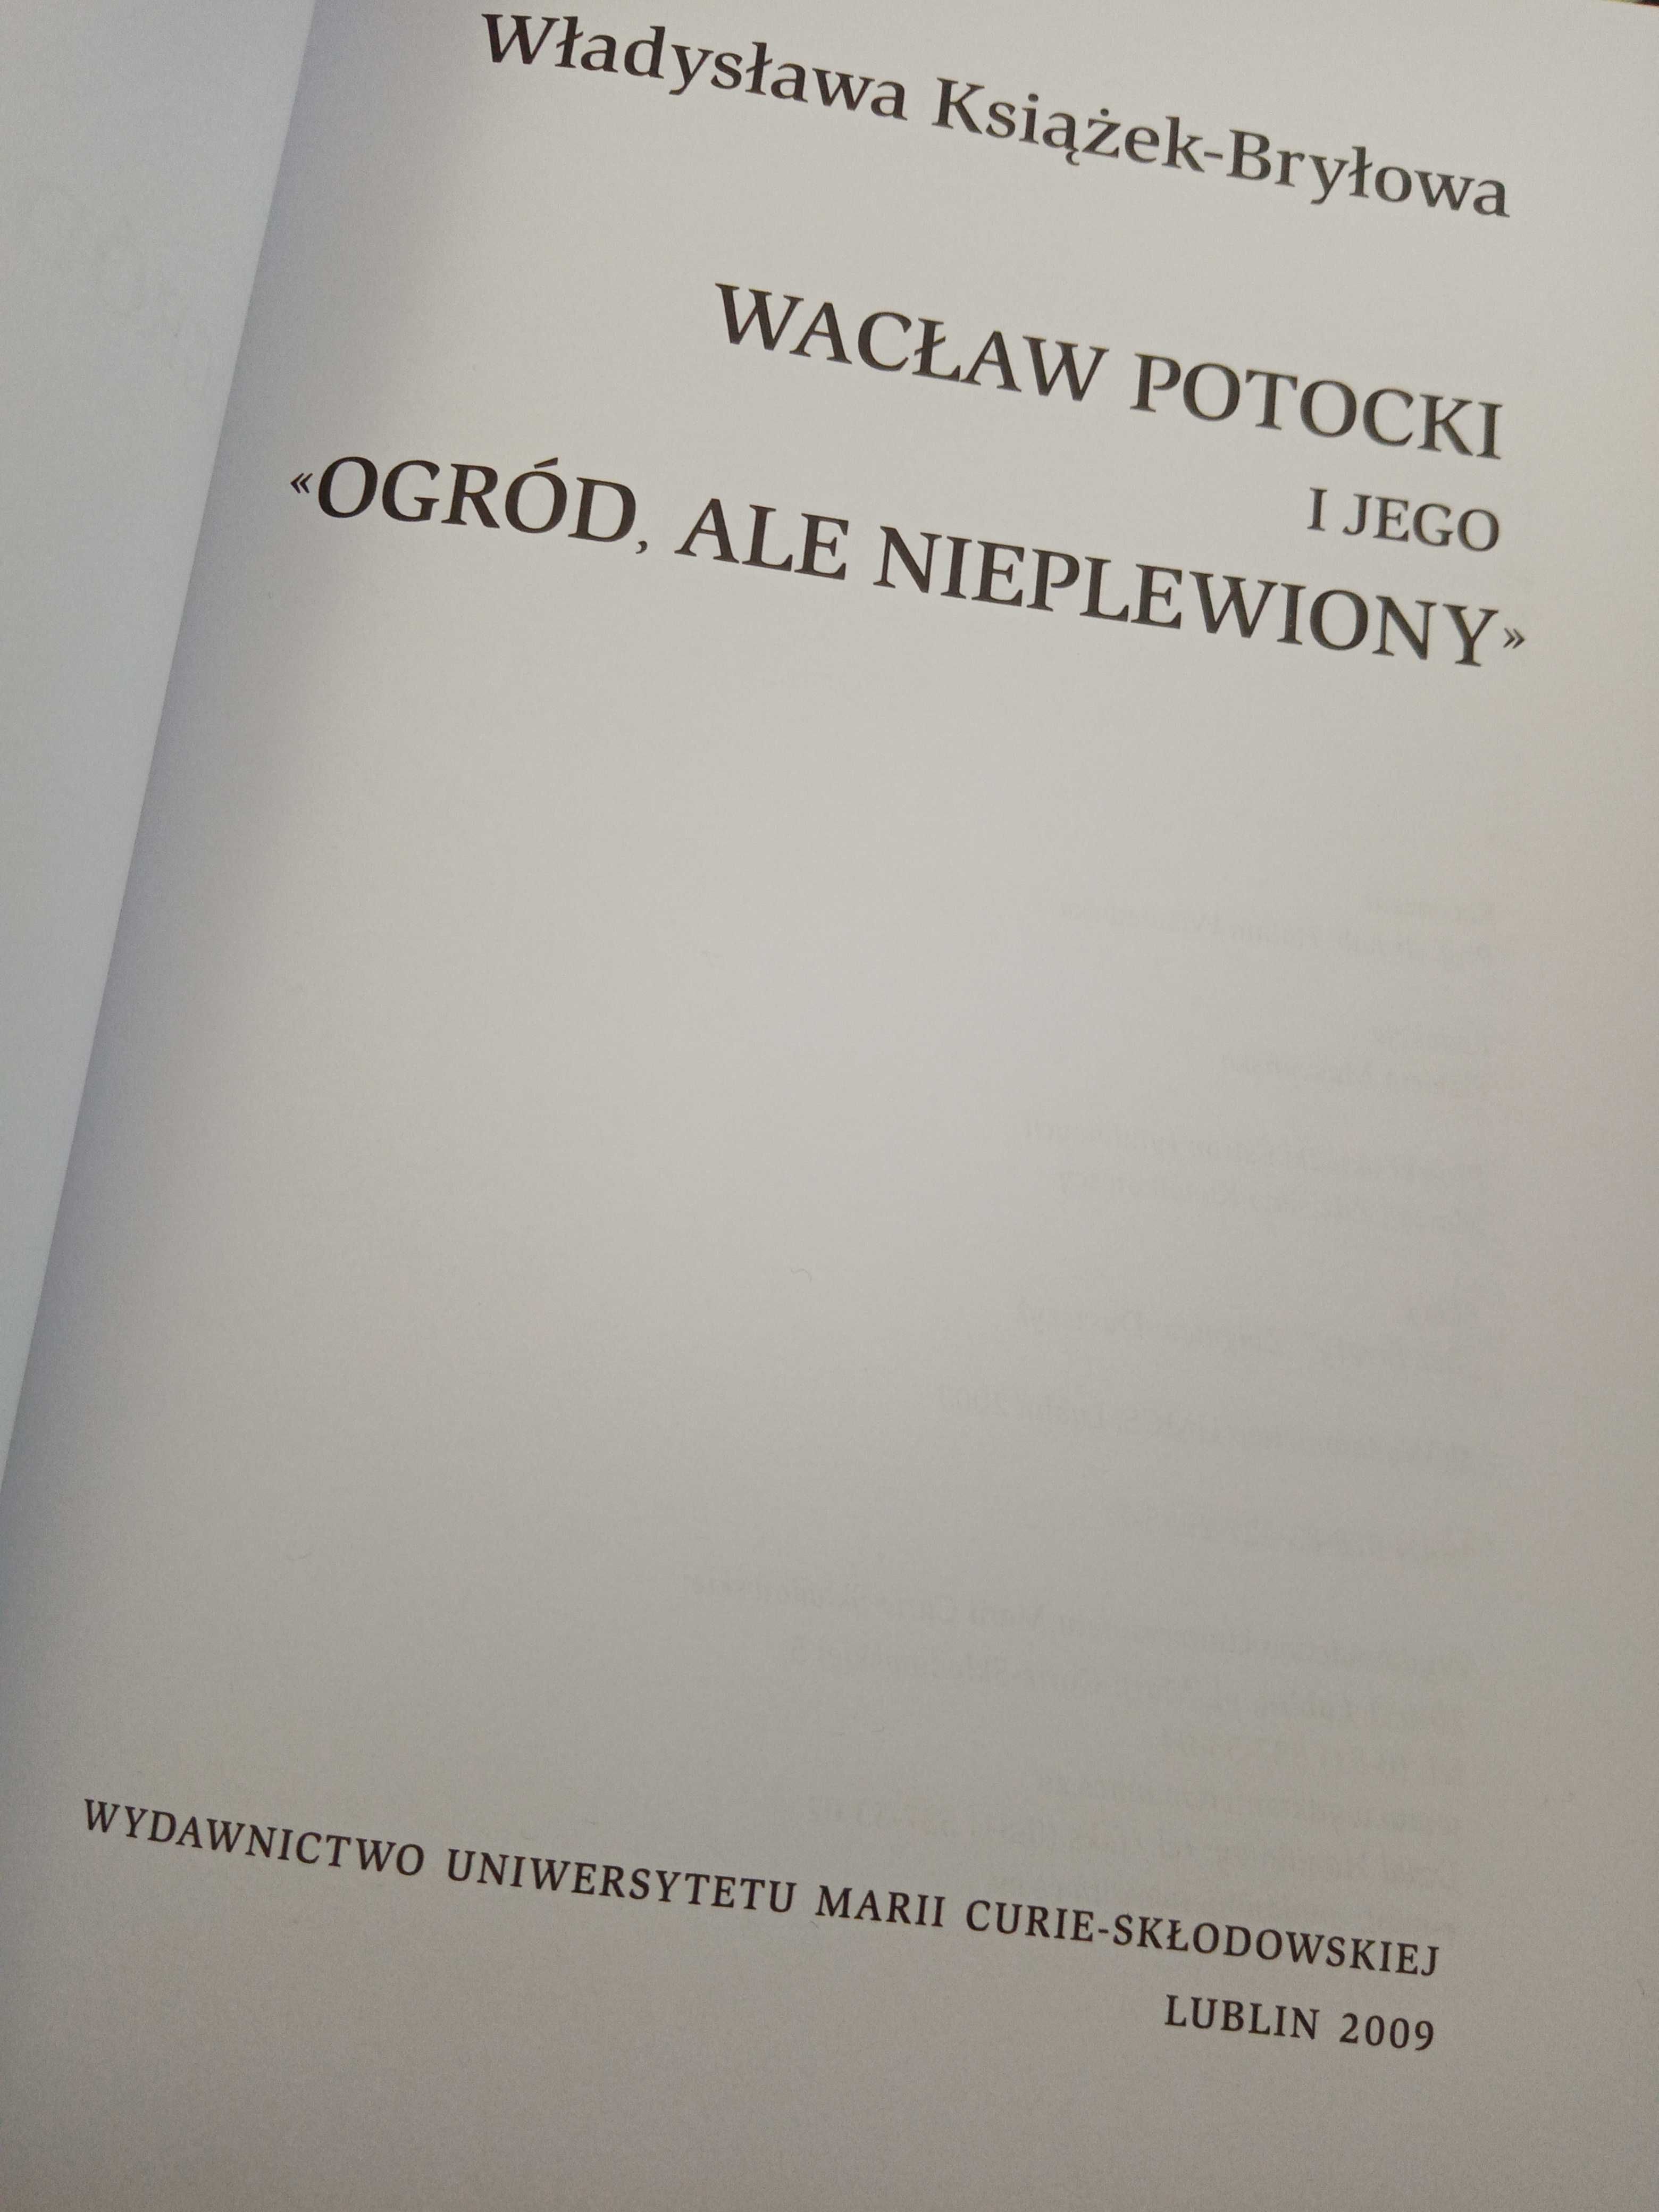 W. Książek-Bryłowa, "Wacław Potockim i jego 'ogród, ale nie plewiony'"